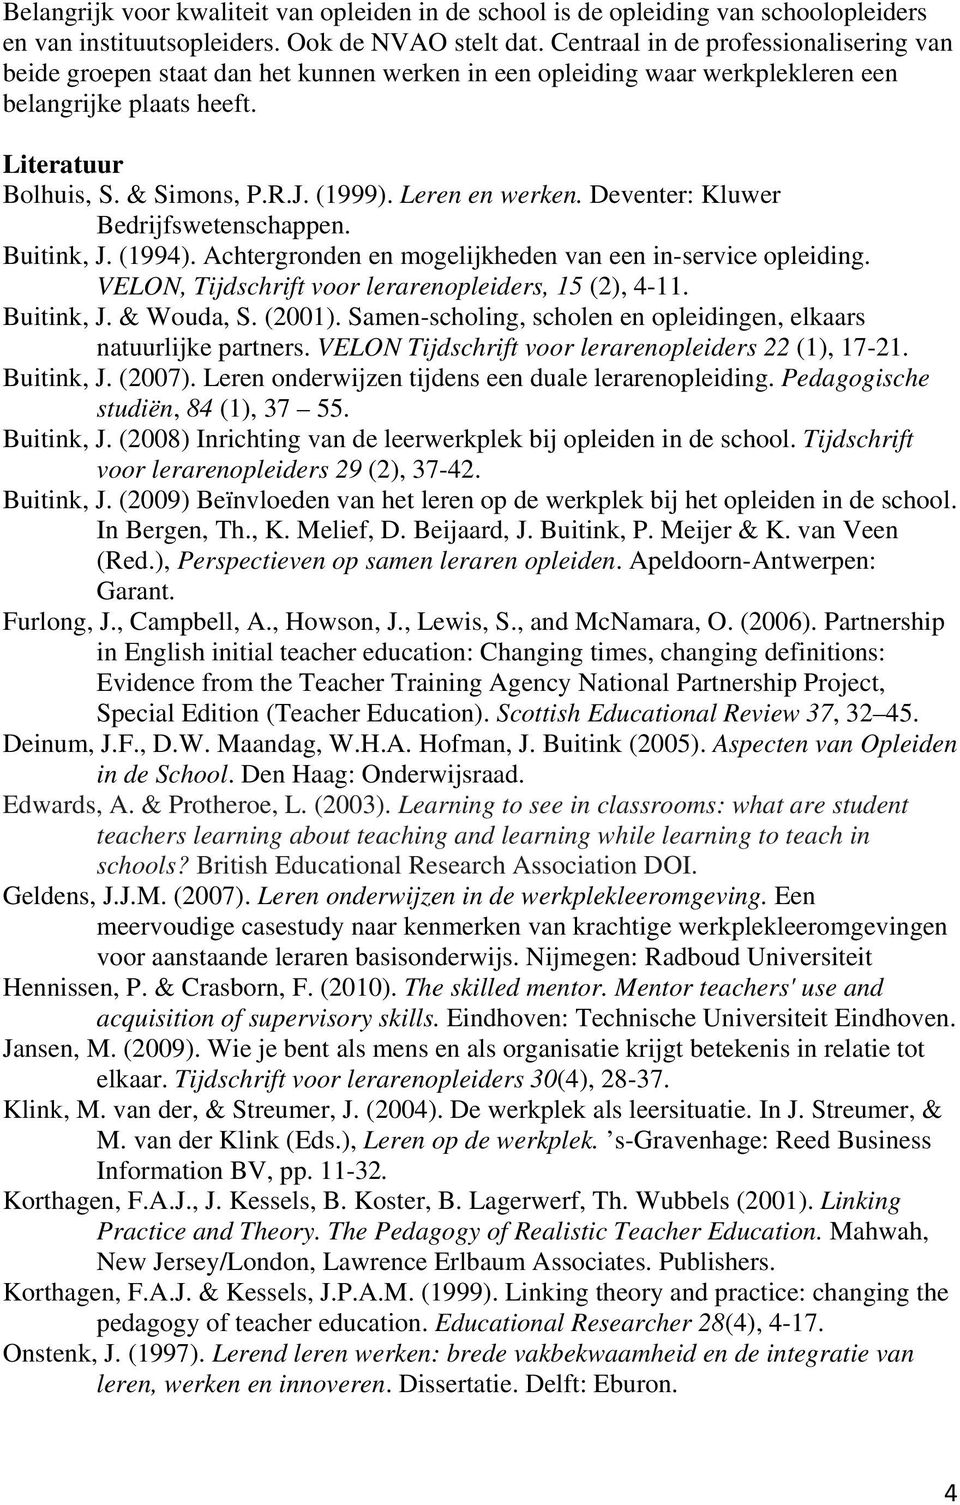 Leren en werken. Deventer: Kluwer Bedrijfswetenschappen. Buitink, J. (1994). Achtergronden en mogelijkheden van een in-service opleiding. VELON, Tijdschrift voor lerarenopleiders, 15 (2), 4-11.